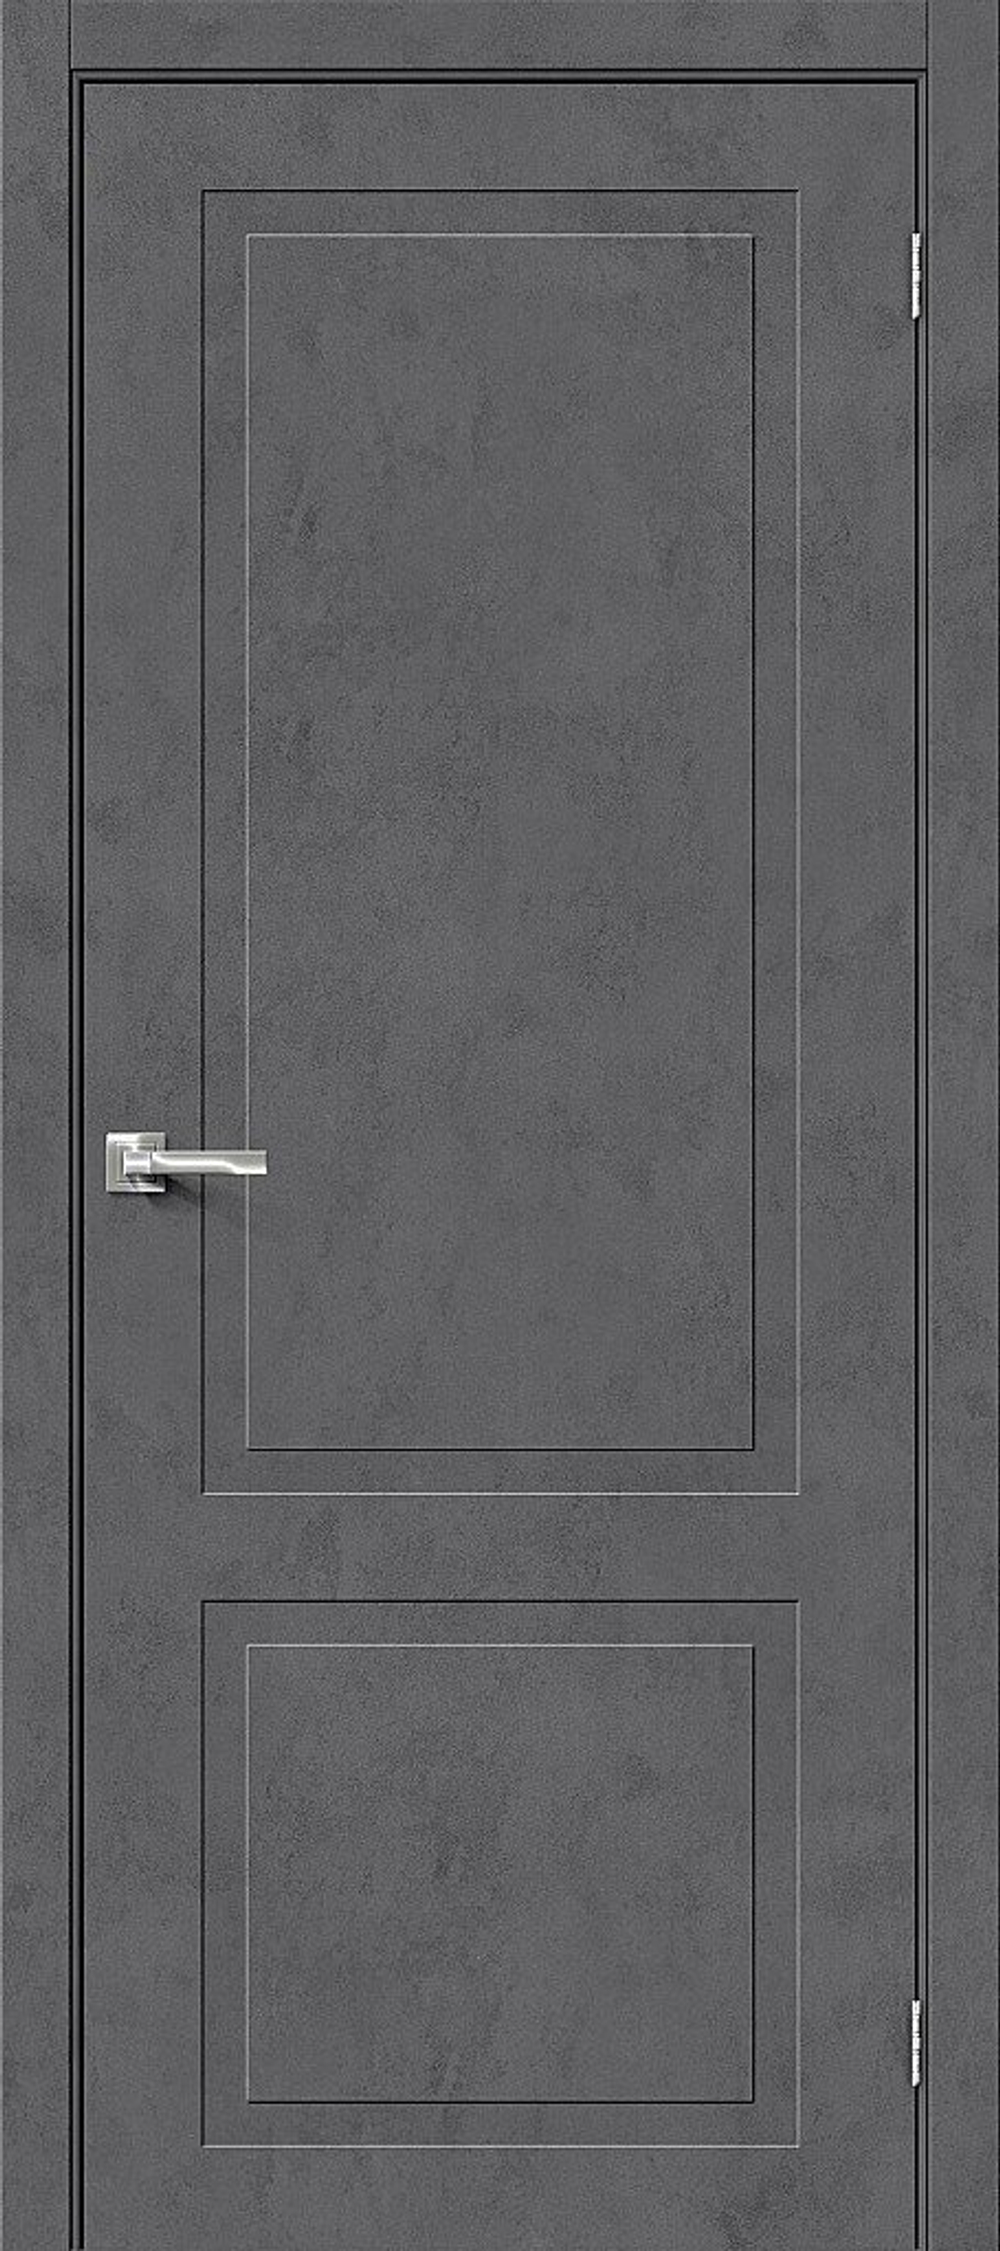 Дверь Эко Шпон Граффити-12